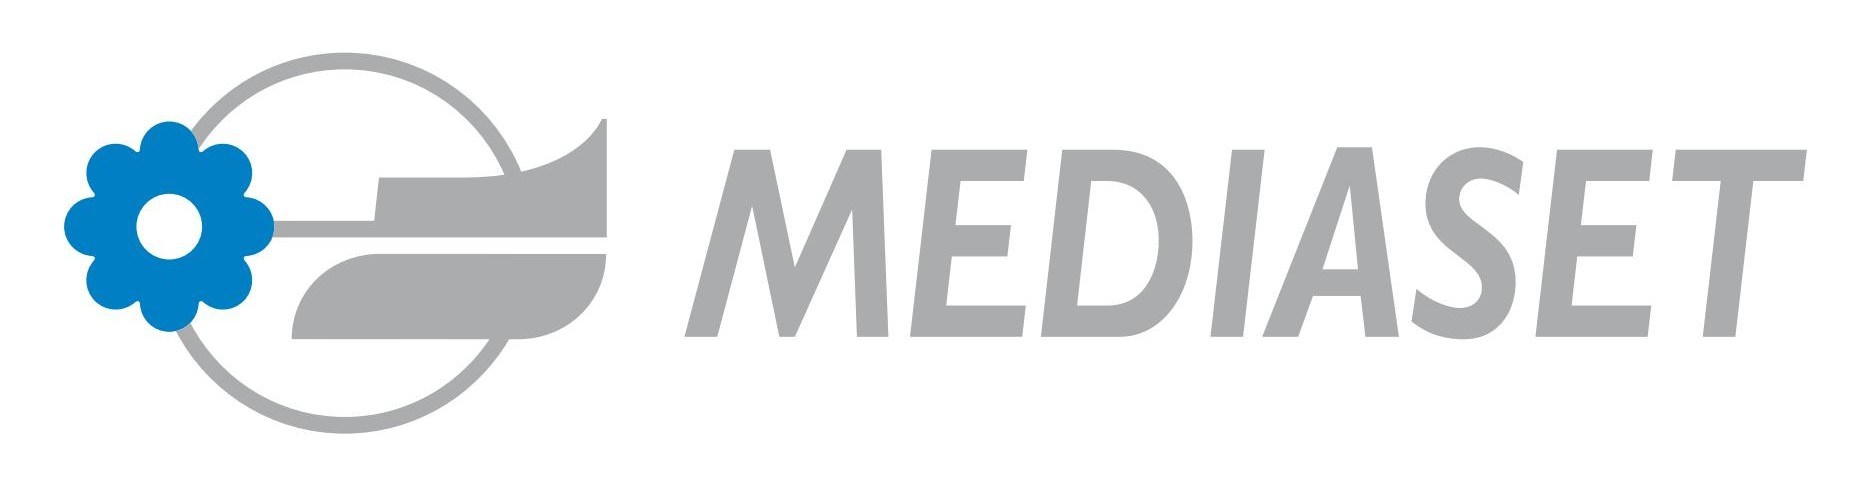 Mediaset Logo png